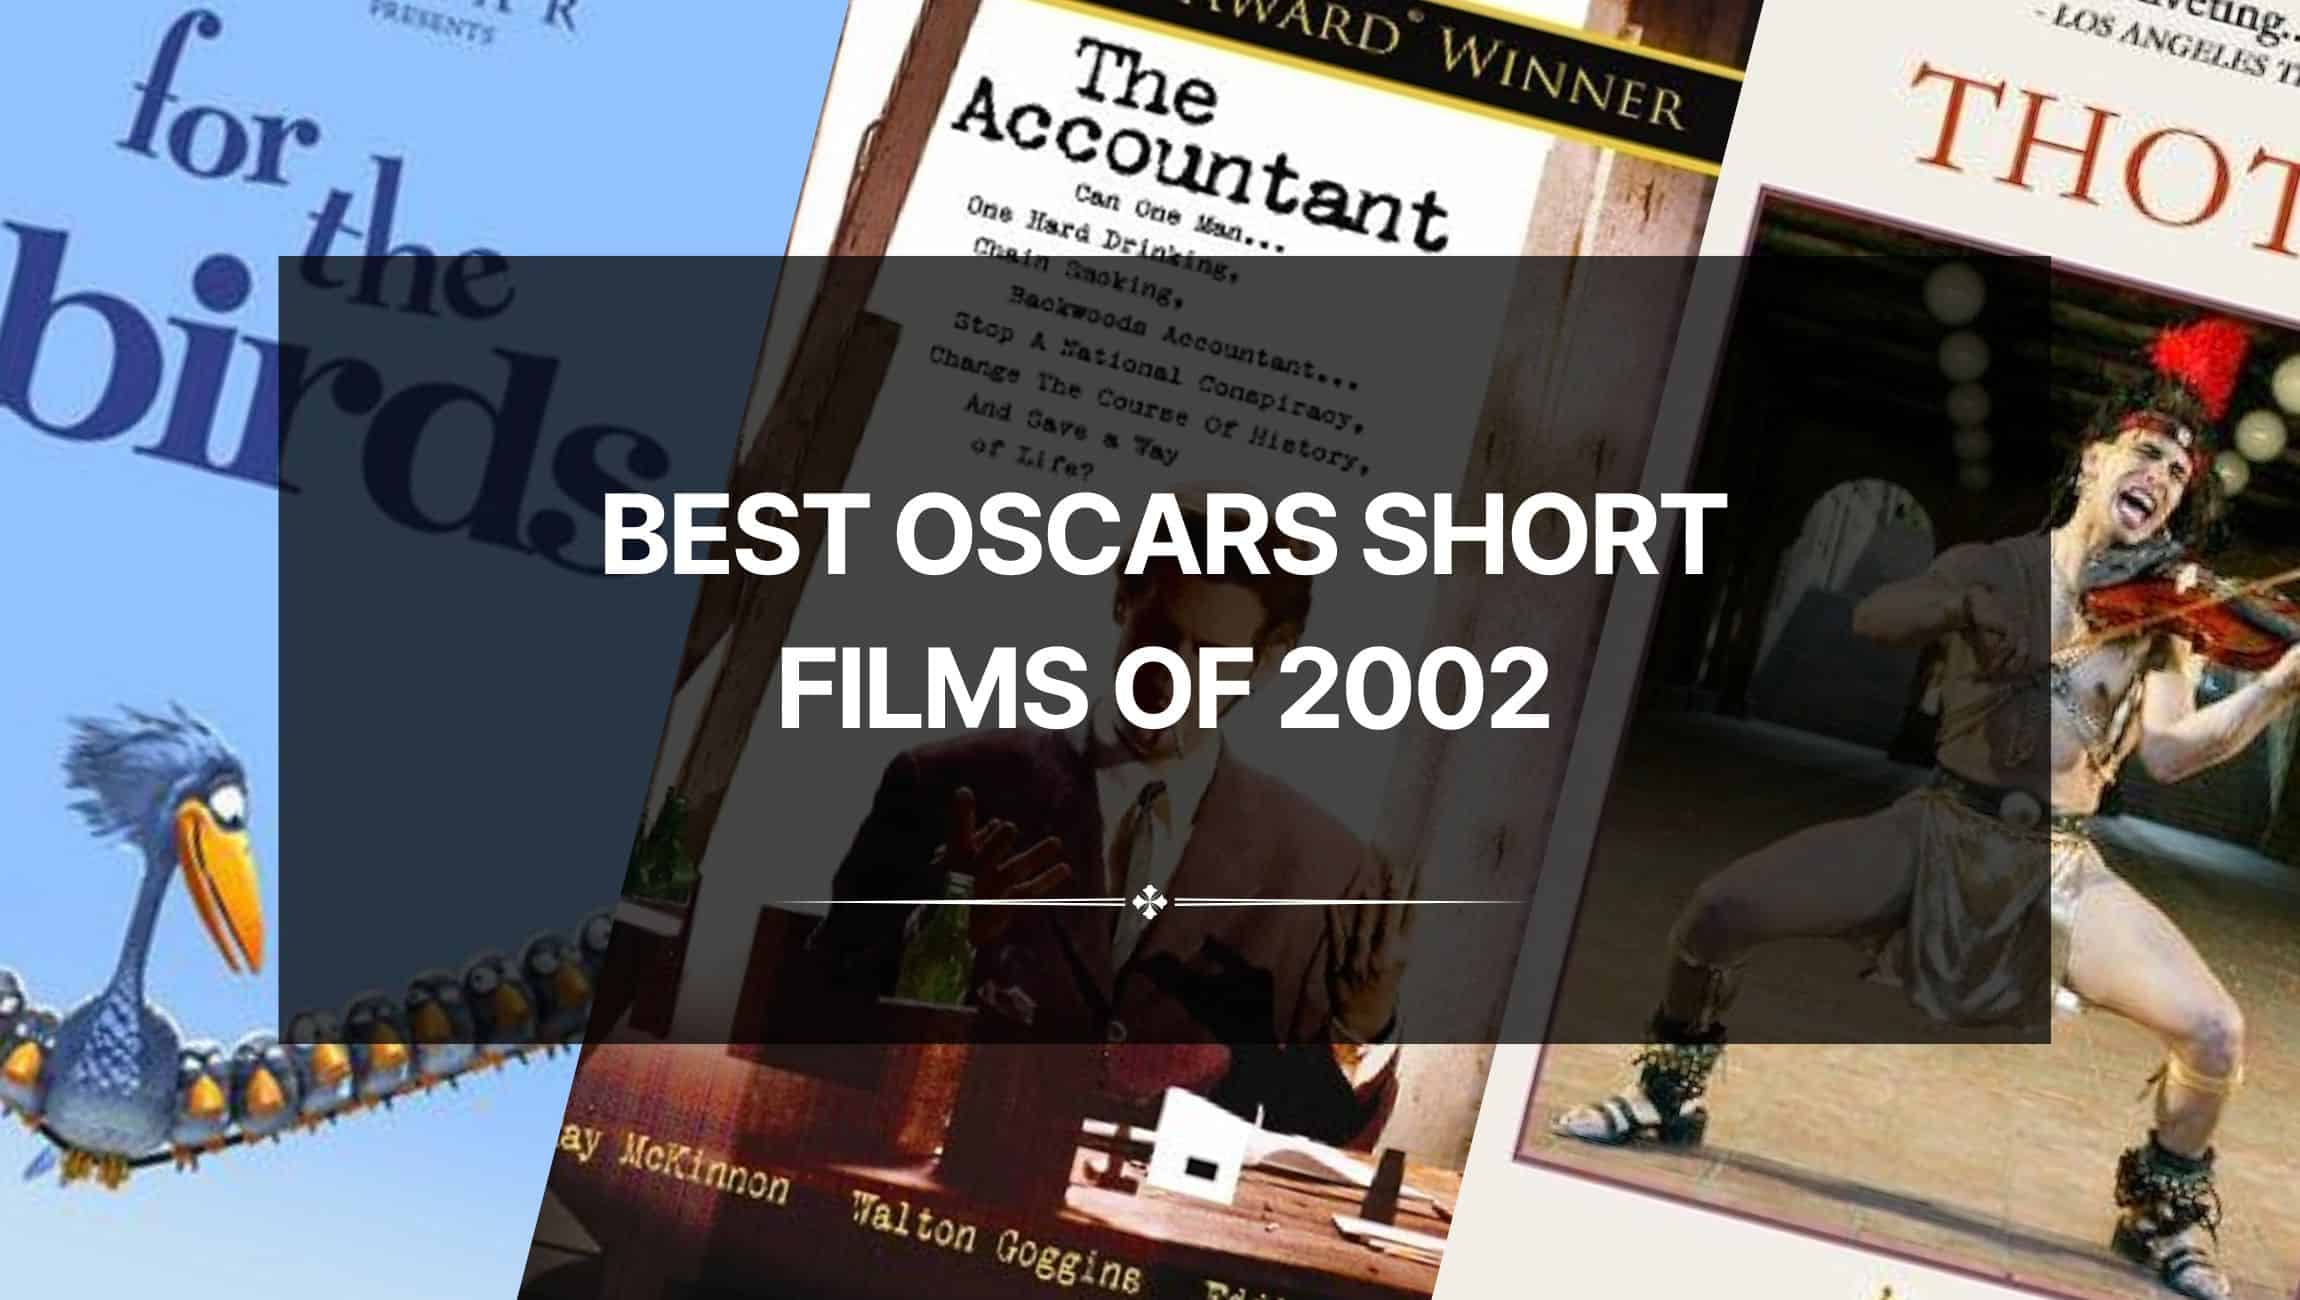 Best Oscars Short Films of 2002: Outstanding Talent